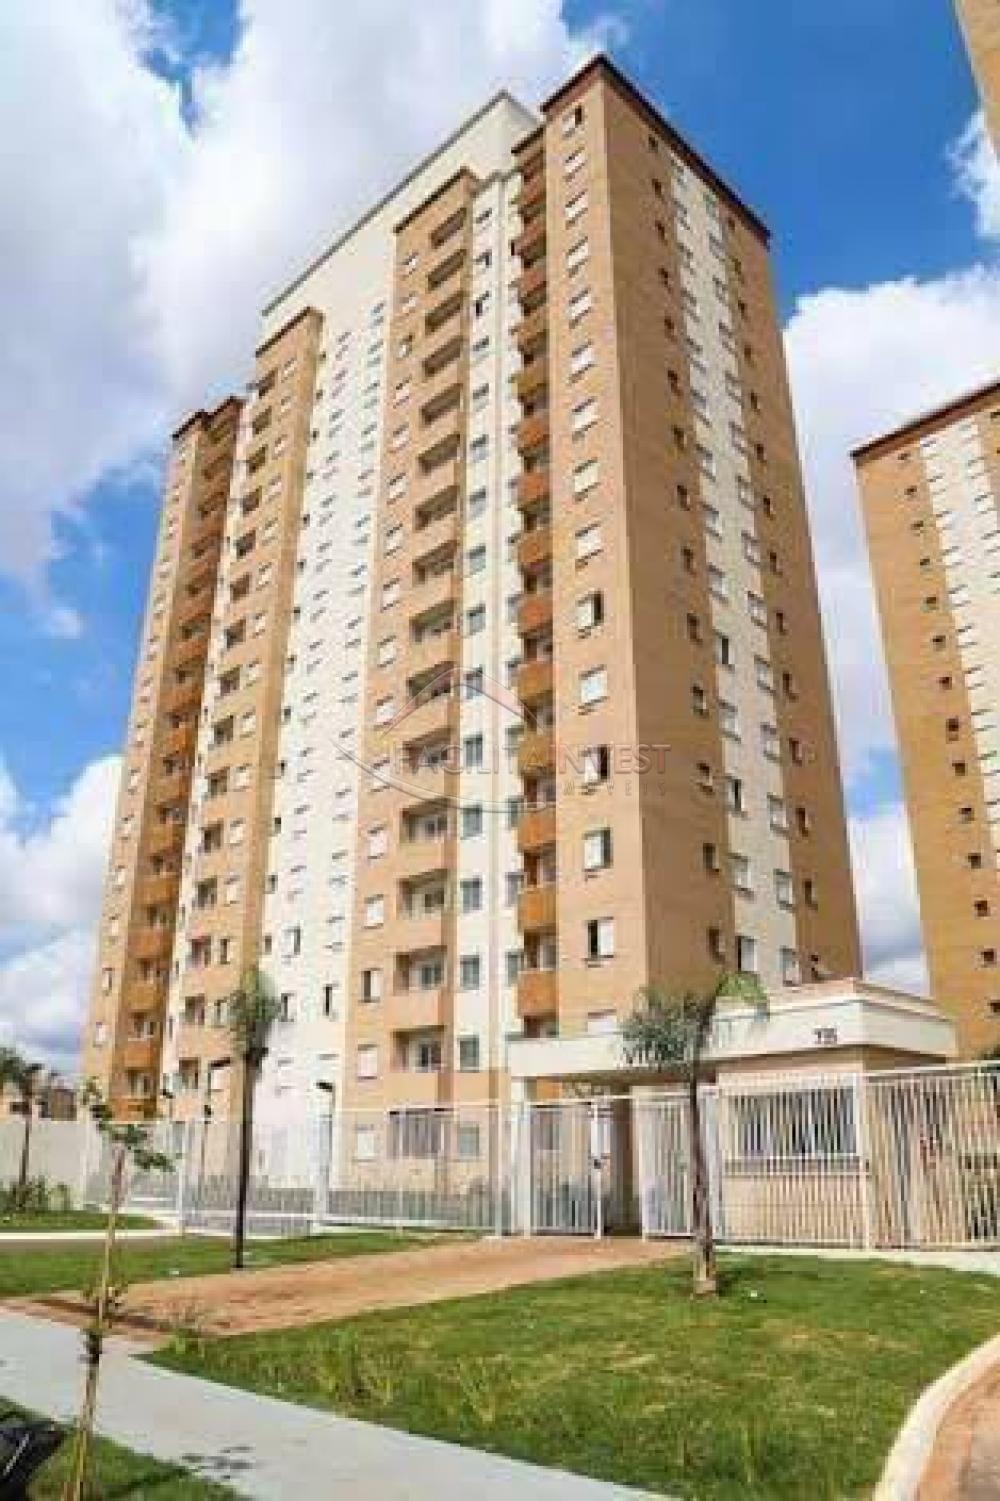 Alugar Apartamentos / Apartamento Mobiliado em Ribeirão Preto R$ 1.000,00 - Foto 10